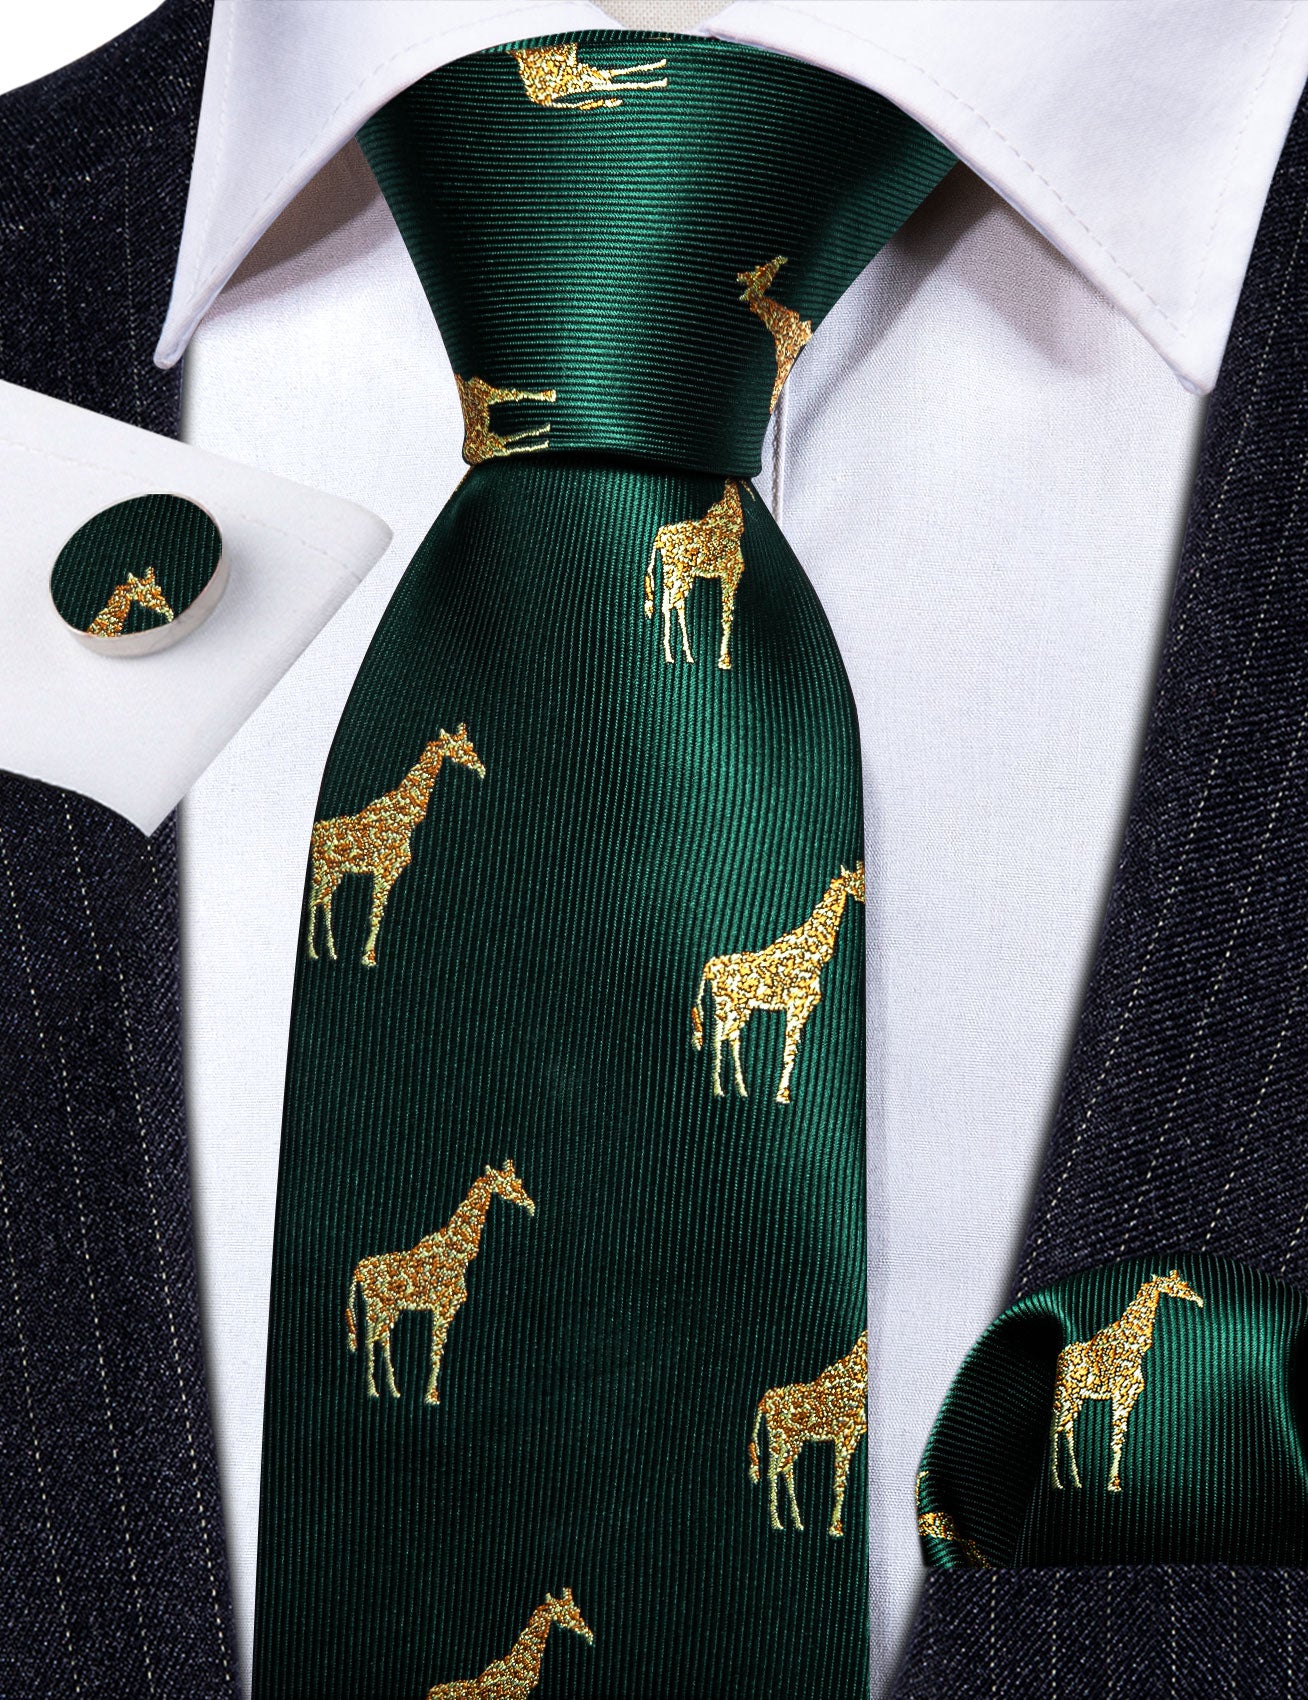 Barry Wang Green Tie Gold Giraffe Print Silk Tie Handkerchief Cufflinks Set